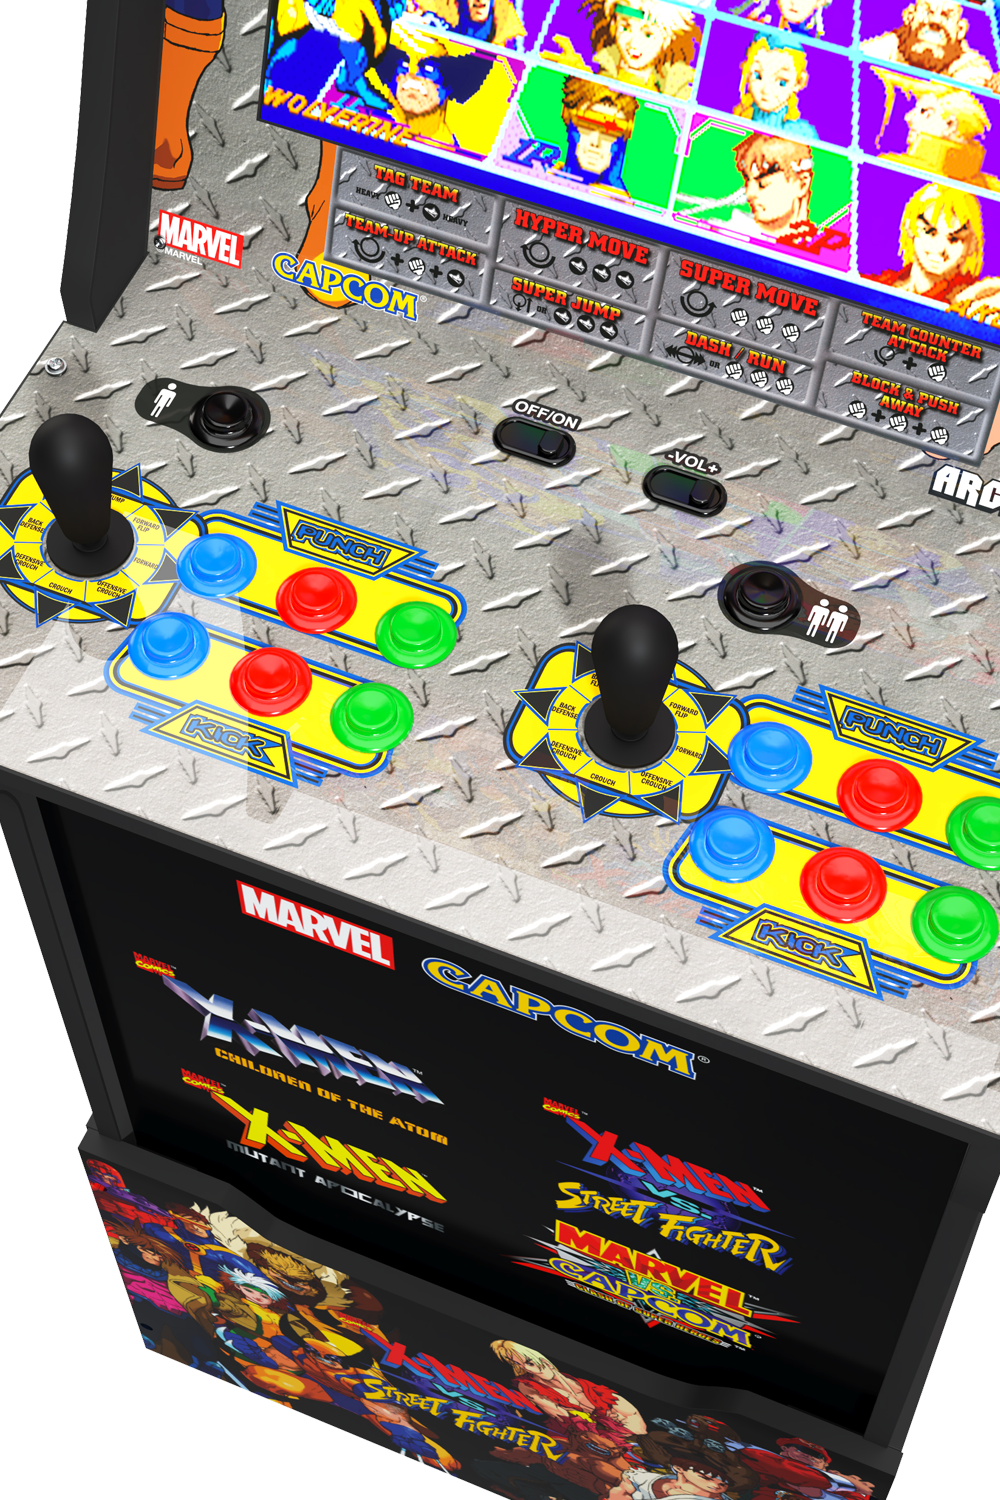 xmen vs street fighter arcade machine